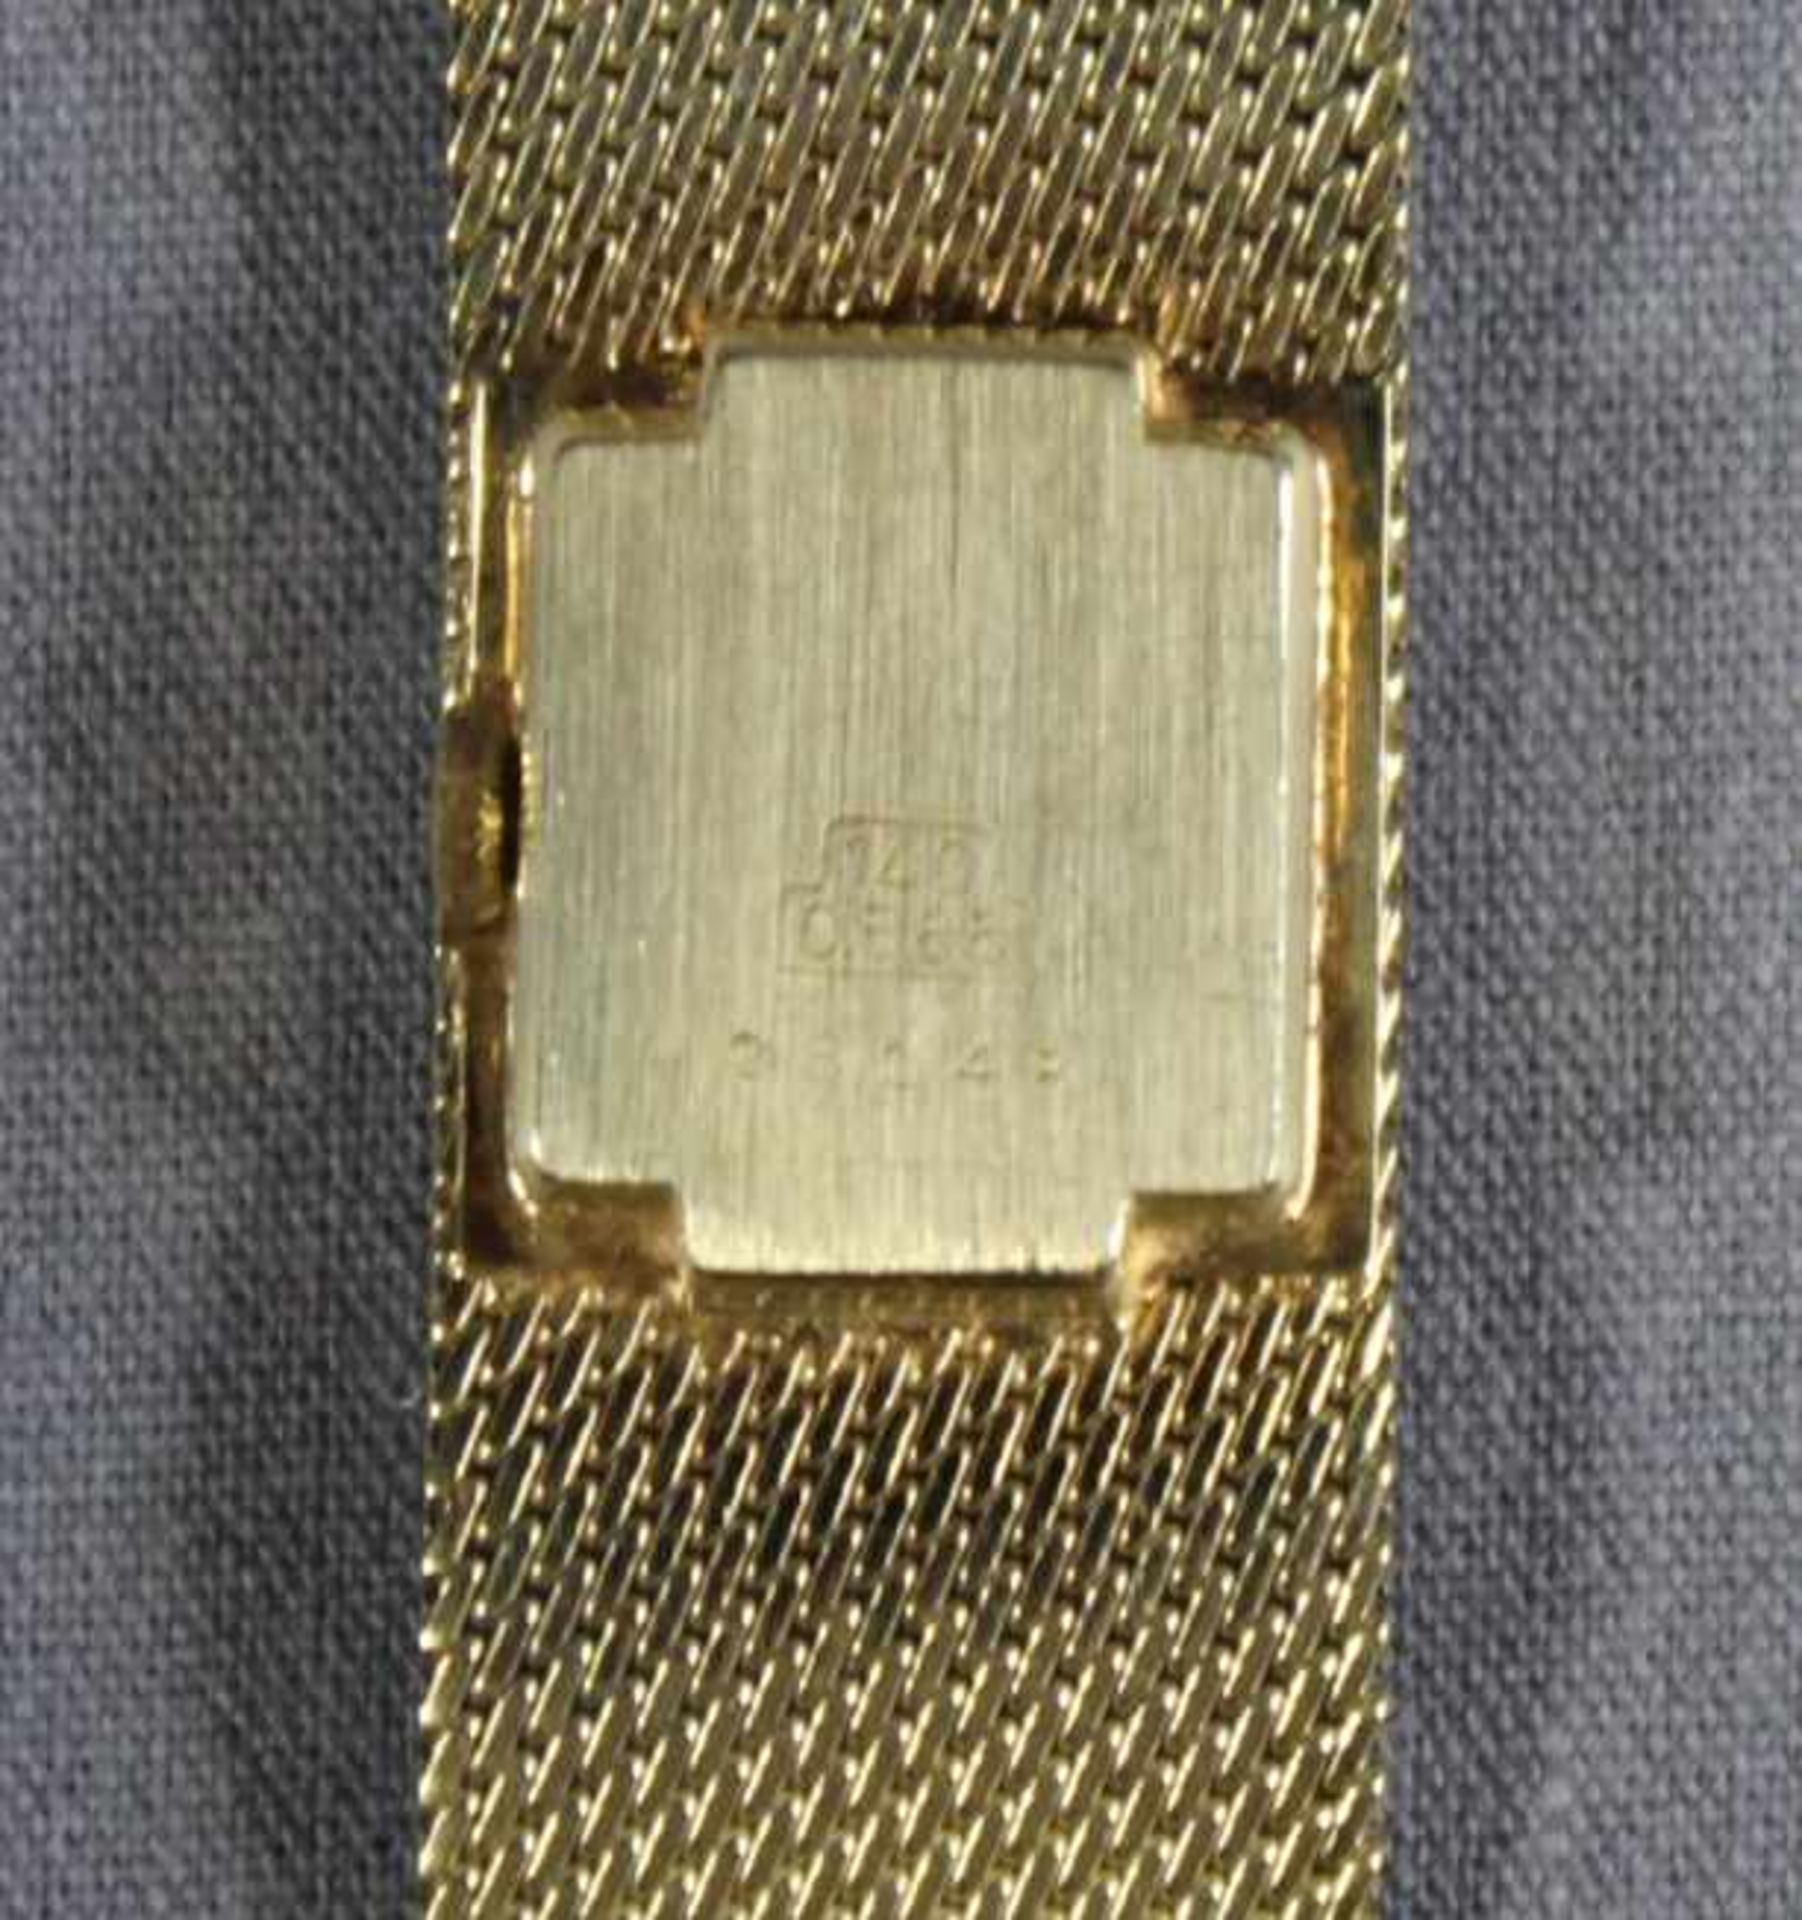 1 Damen-Armbanduhr der Marke "Condor 80", 14kt.Gg (585/000), Lünette besetzt mit 20 kleinen - Image 2 of 2